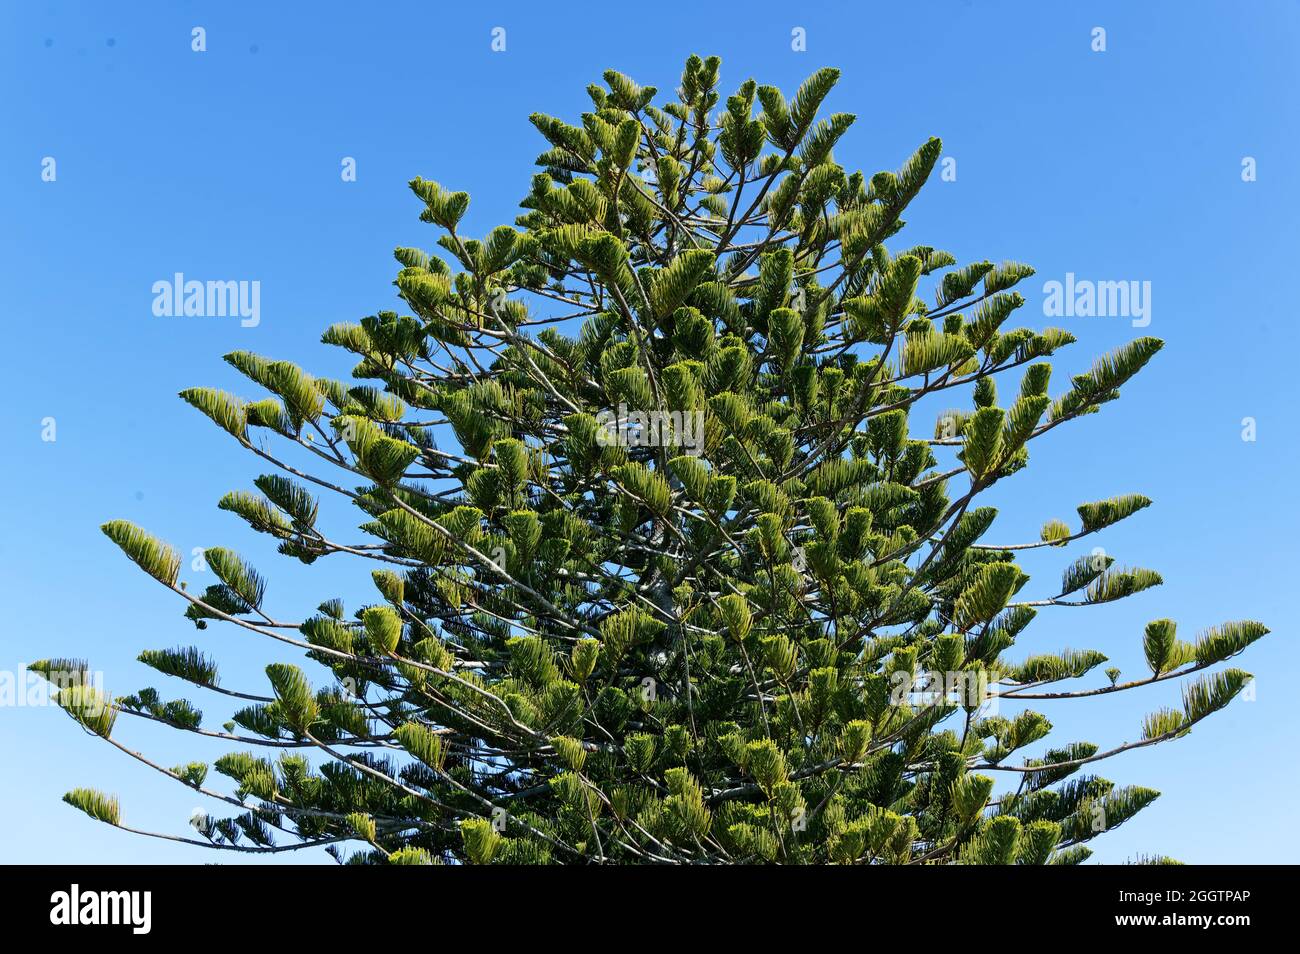 Couleurs contrastées, le vert foncé d'un arbre, Araucaria heterophylla ou le pin de l'île Norfolk, contre le bleu du ciel Banque D'Images